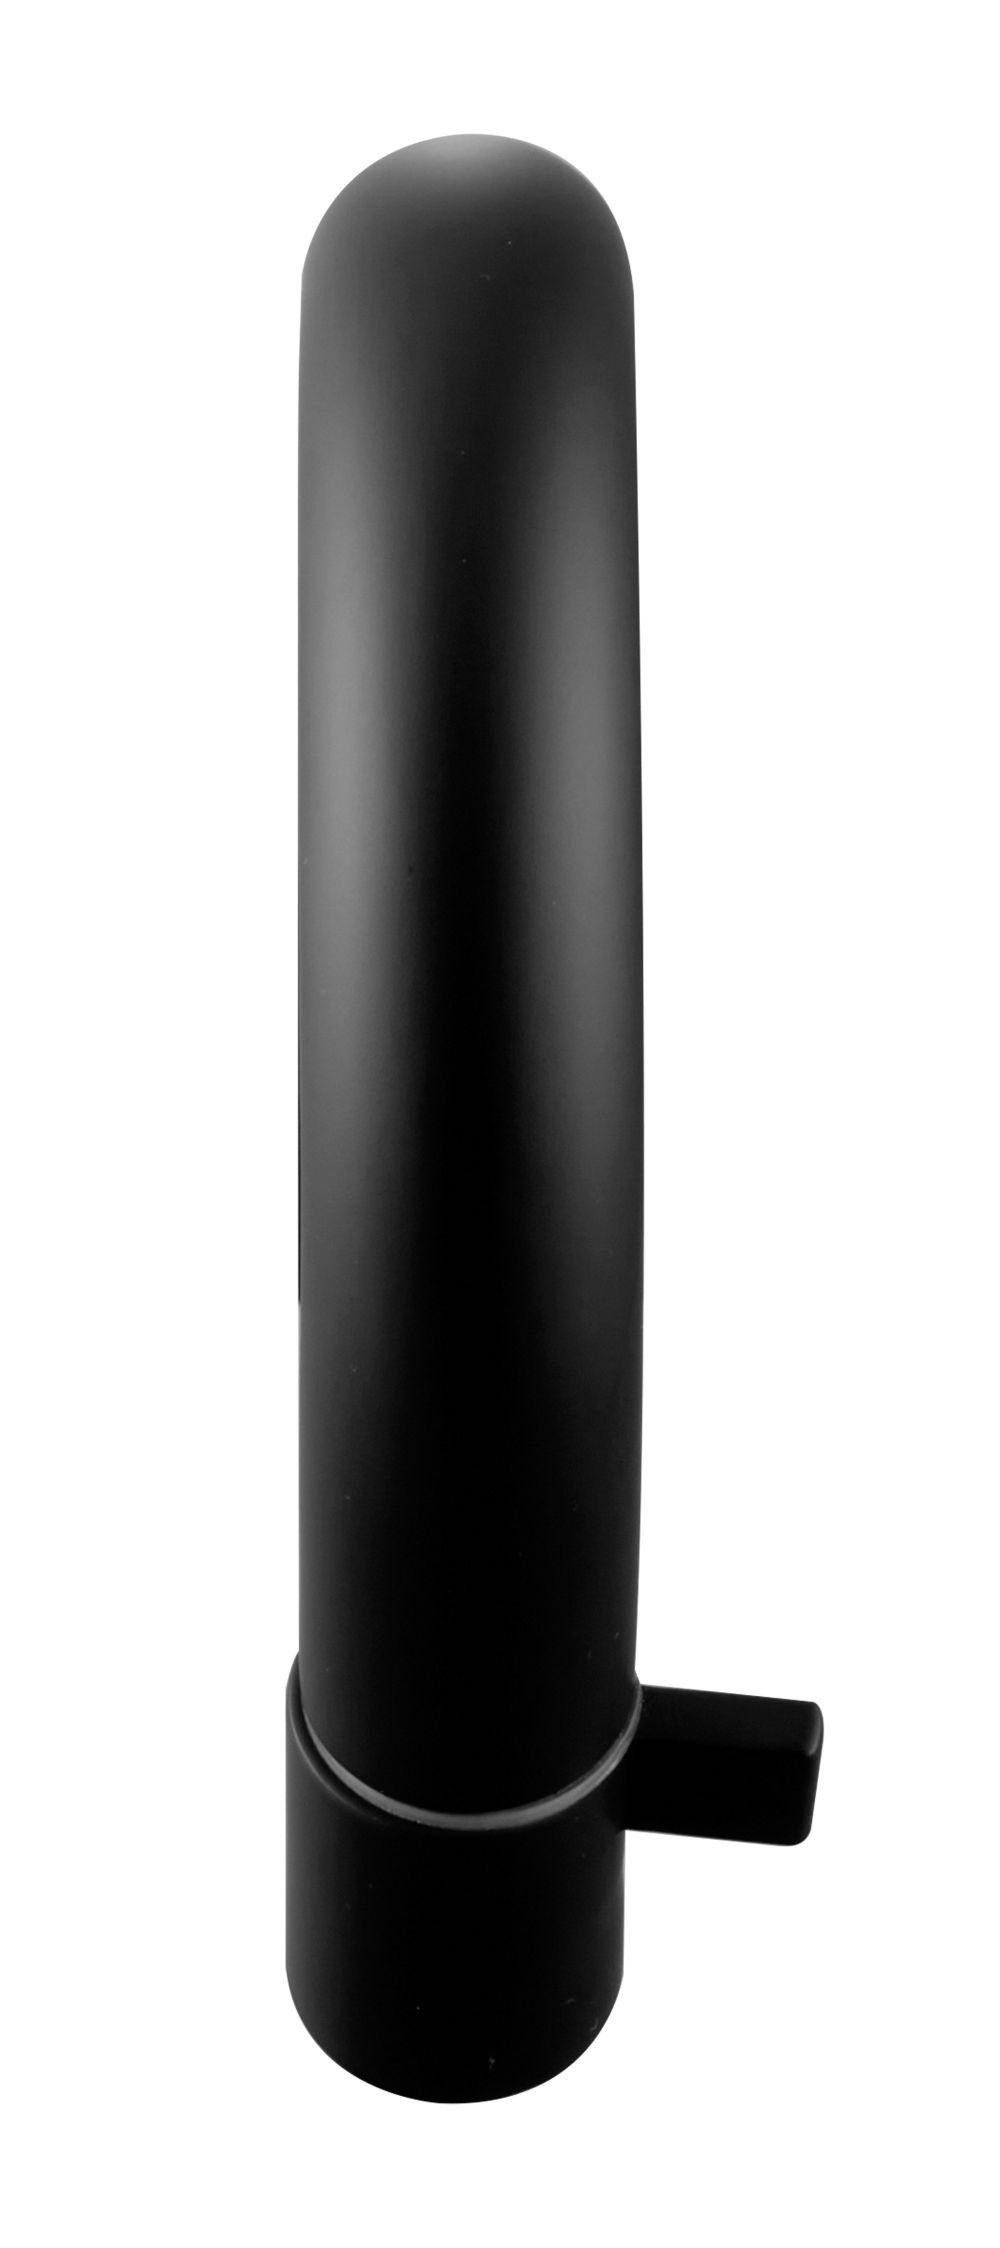 Tuganna Waschtischarmatur MLB Kopfsteuerung schwarz Kaltwasser-Standventil matt Badarmatur mit